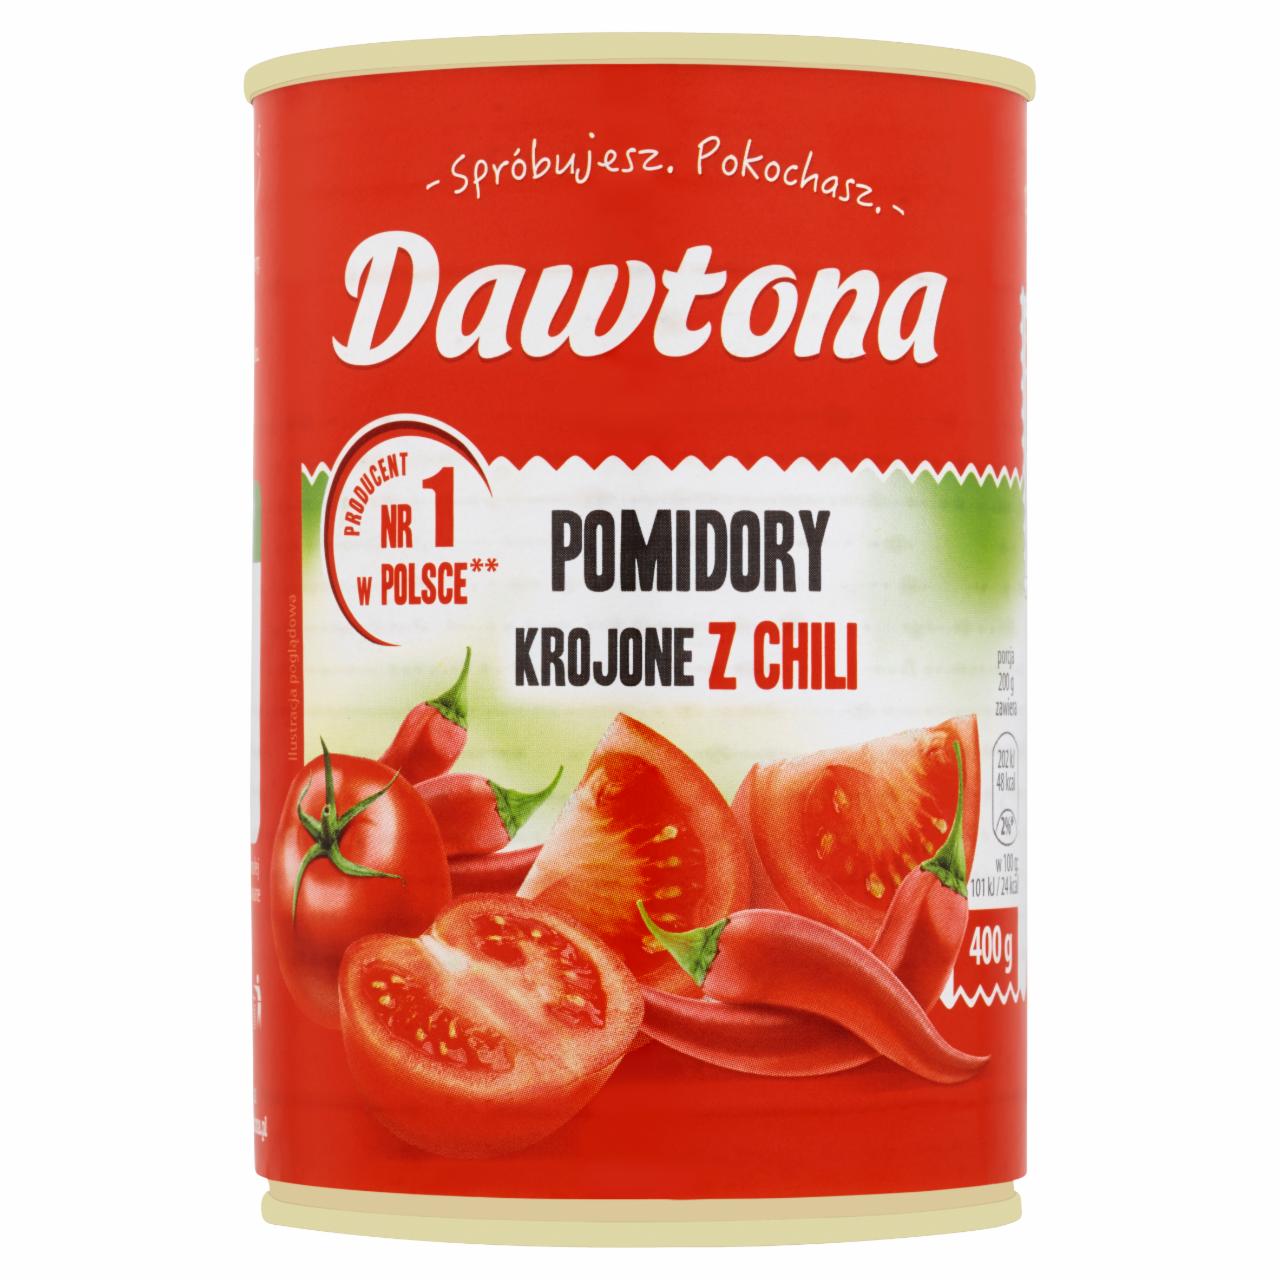 Zdjęcia - Dawtona Pomidory krojone z chili 400 g